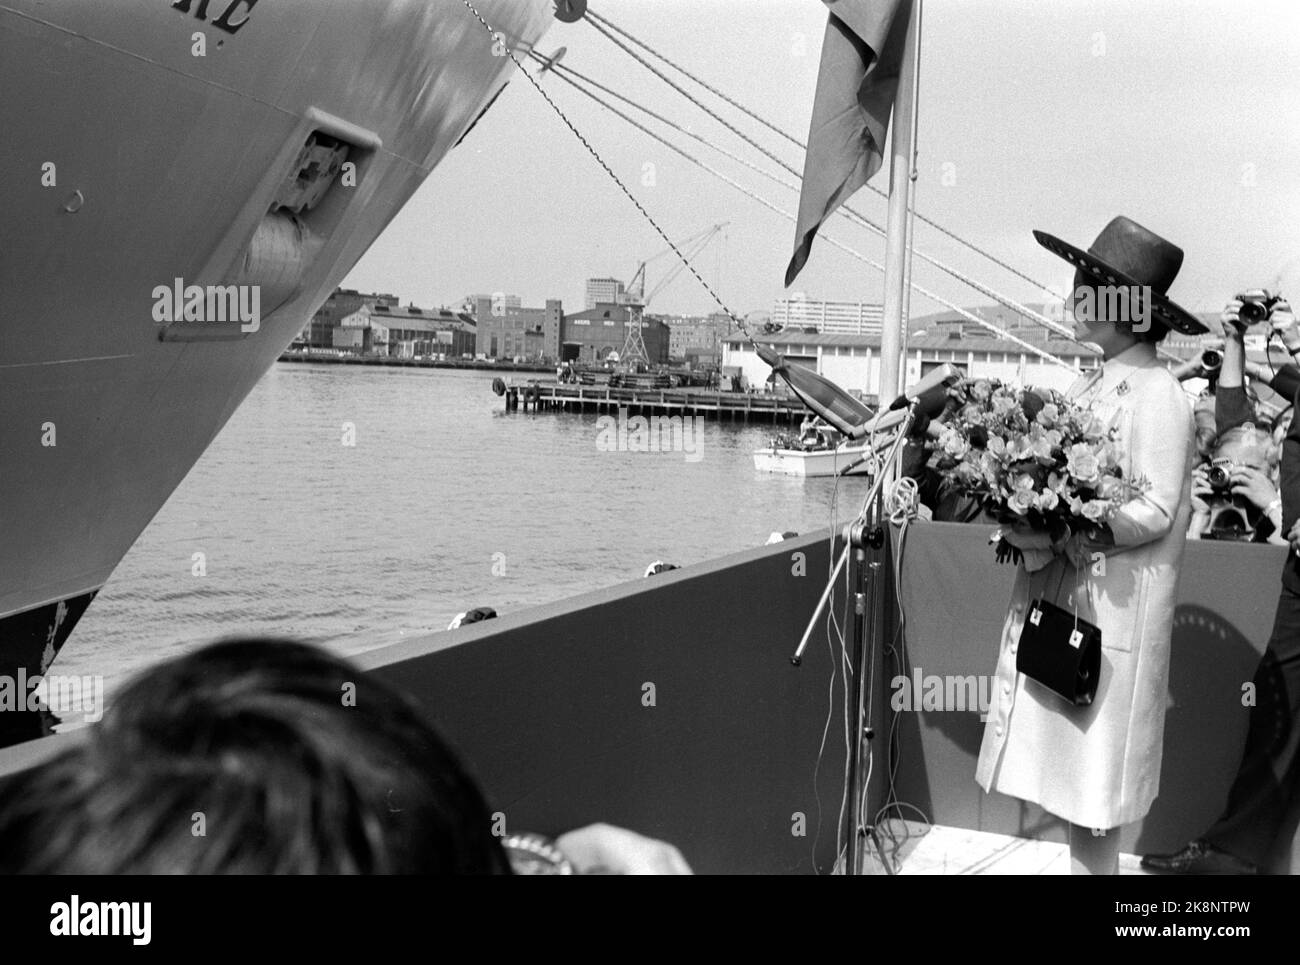 Oslo 19710514 Kronprinzessin Sonja tauft das Kreuzschiff Sea Venture. Hier wird die Kronprinzessin gesprochen, während die Champagnerflasche fertig hängt. Foto: NTB / NTB Stockfoto